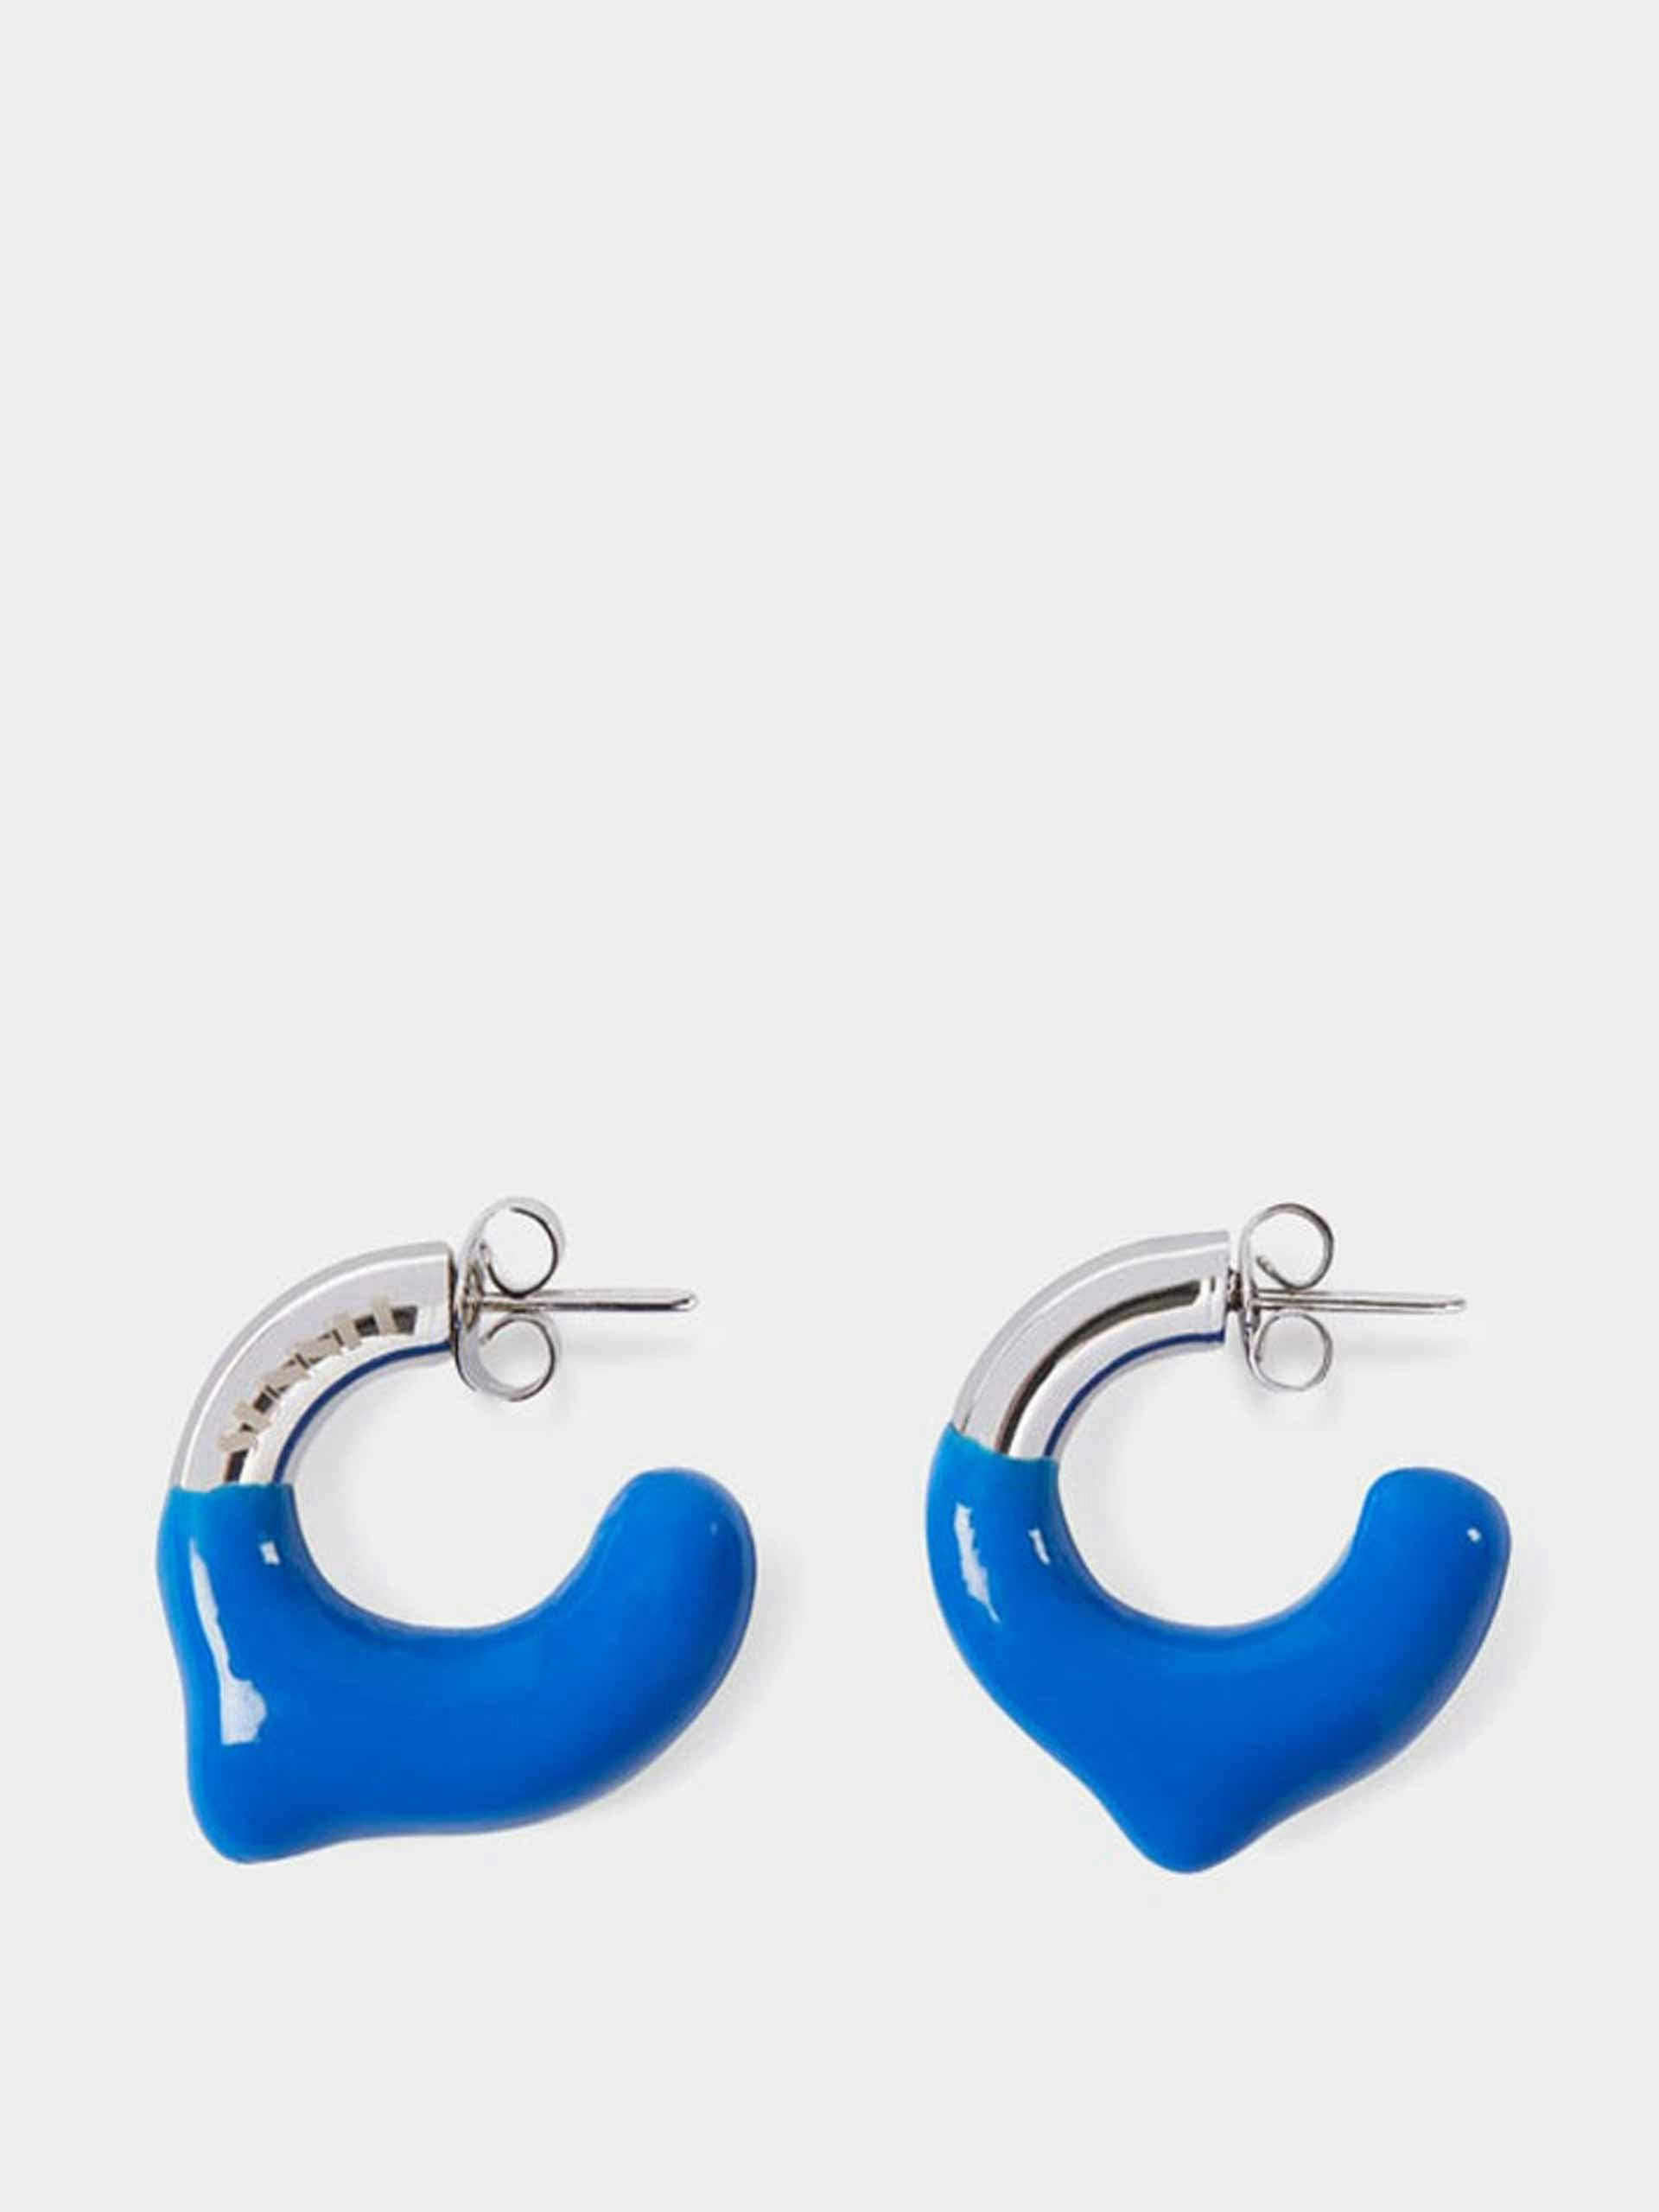 Mini rubberized earrings